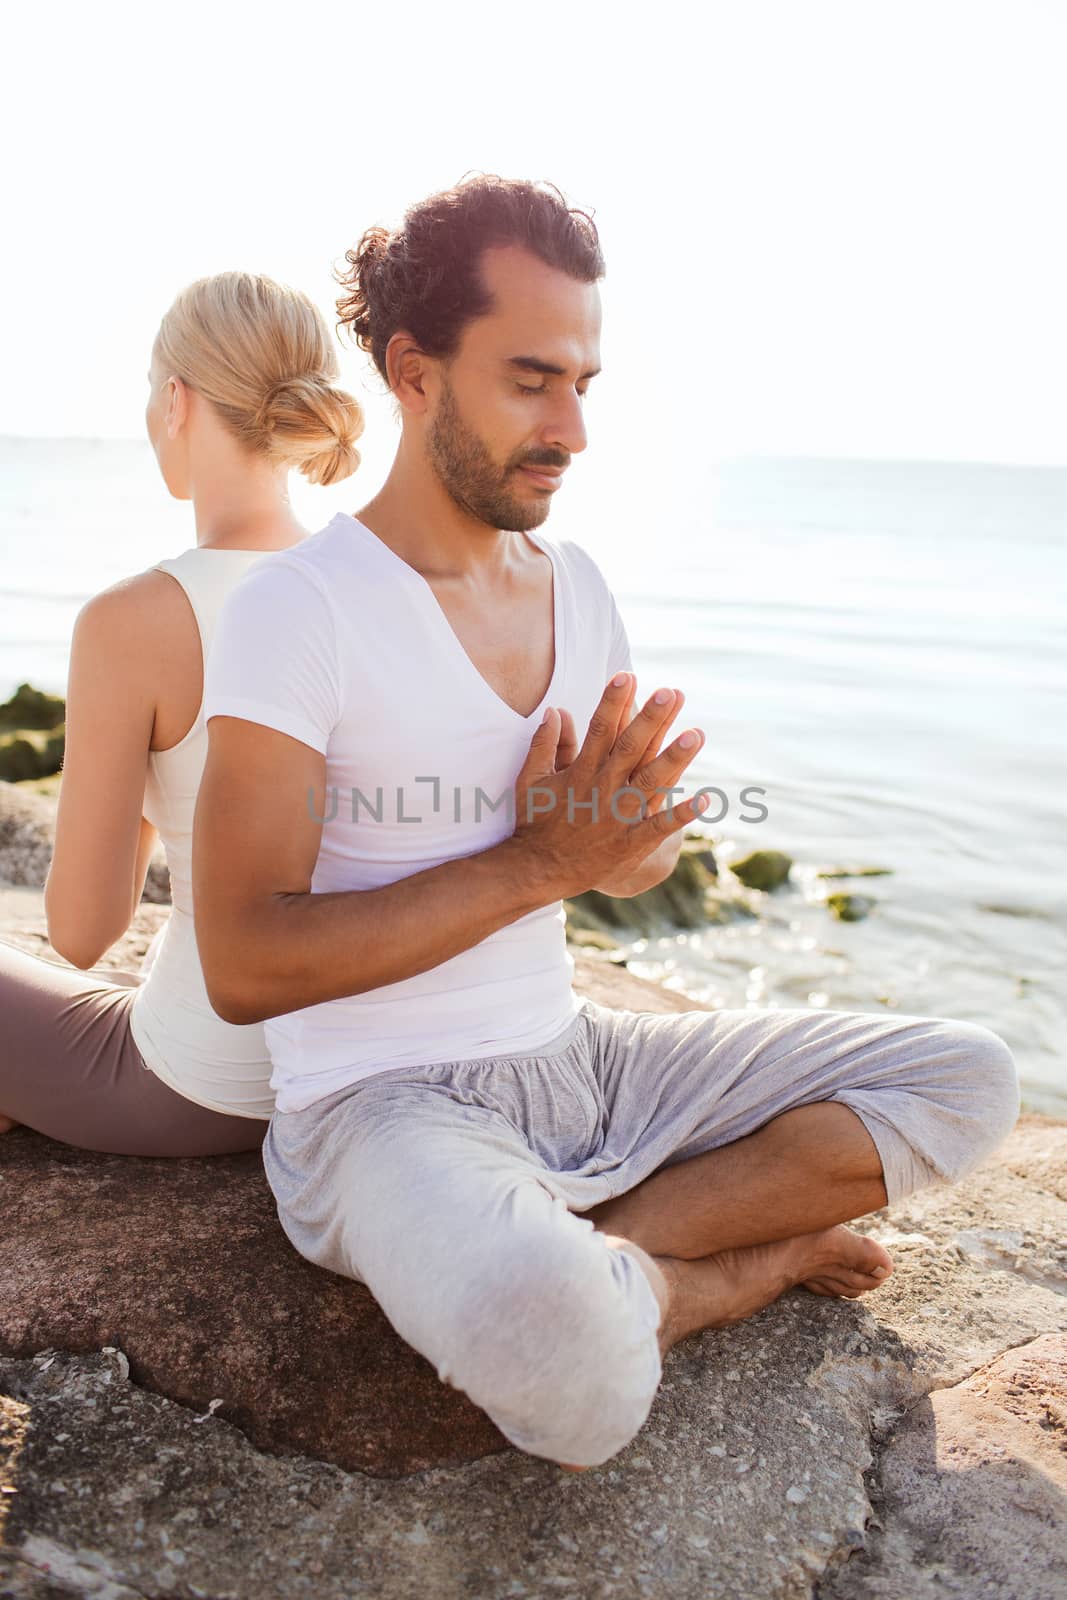 smiling couple making yoga exercises outdoors by dolgachov